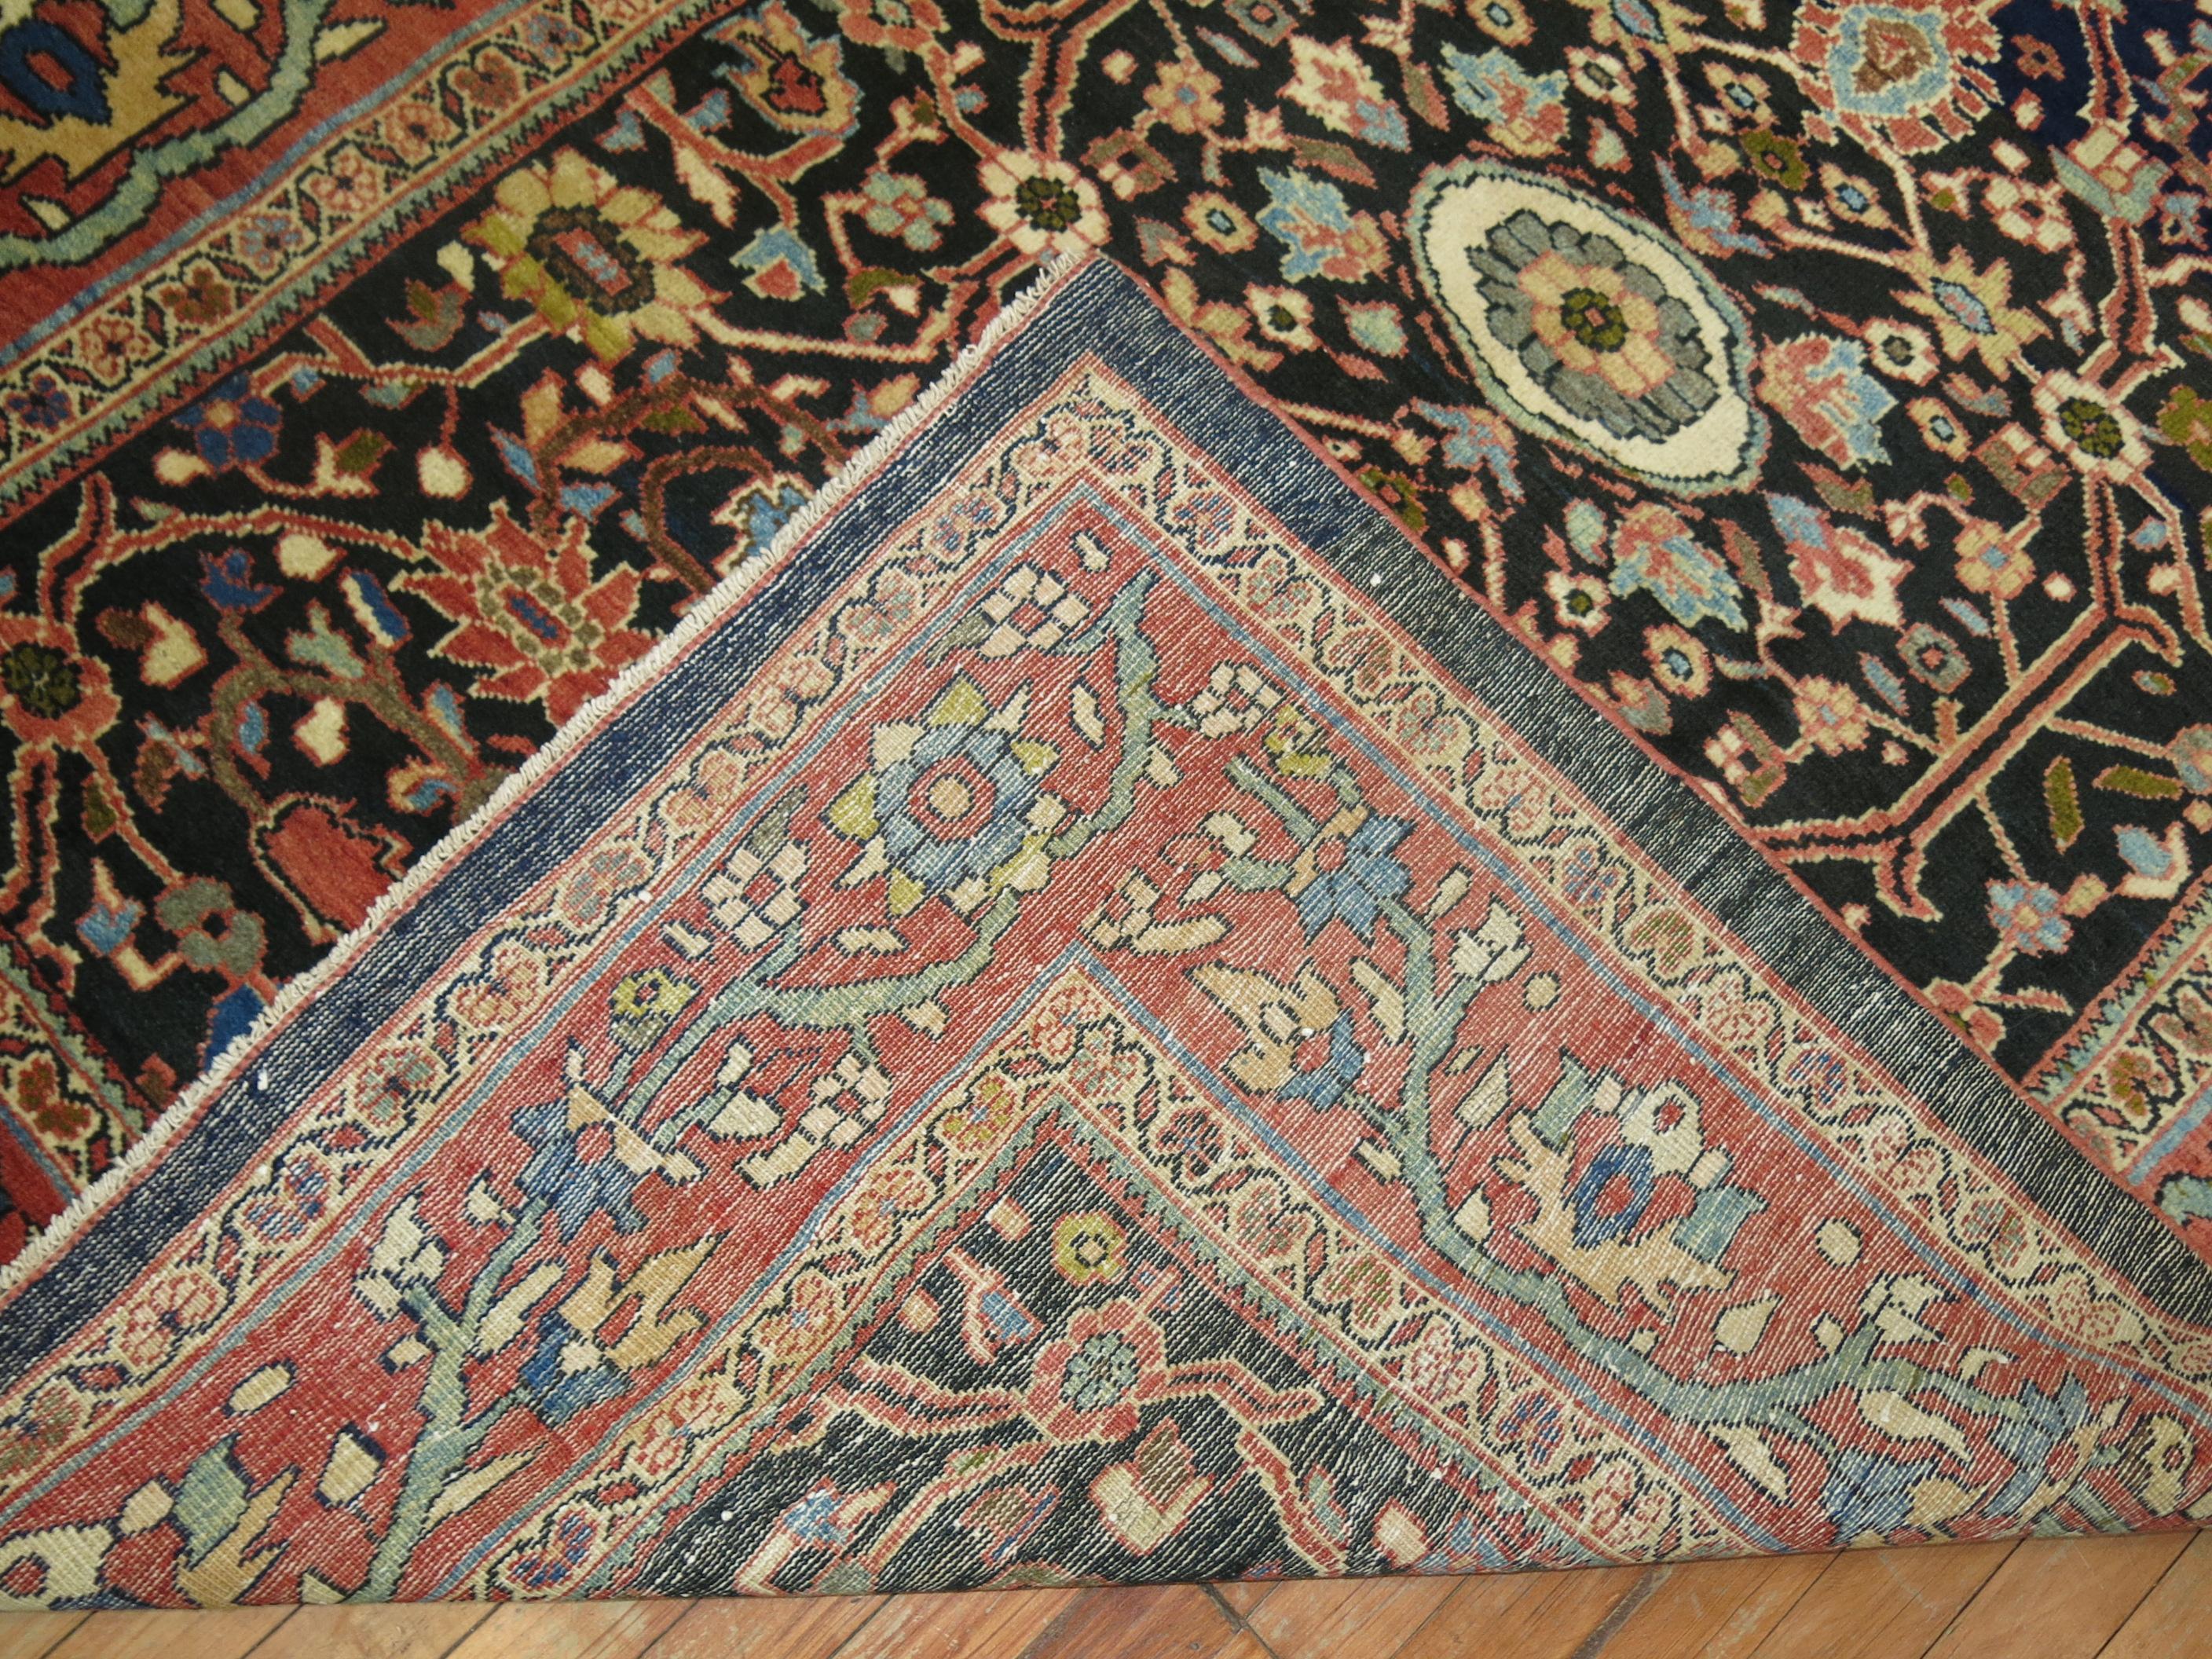 Ein Kenner Kaliber seltene Größe frühen 20. Jahrhundert persischen mahal Sultanabad Teppich.

Die Sultanabad-Teppiche werden in einer Reihe von Dörfern im westlichen Zentraliran geknüpft und zeichnen sich durch großflächige All-Over-Muster aus,